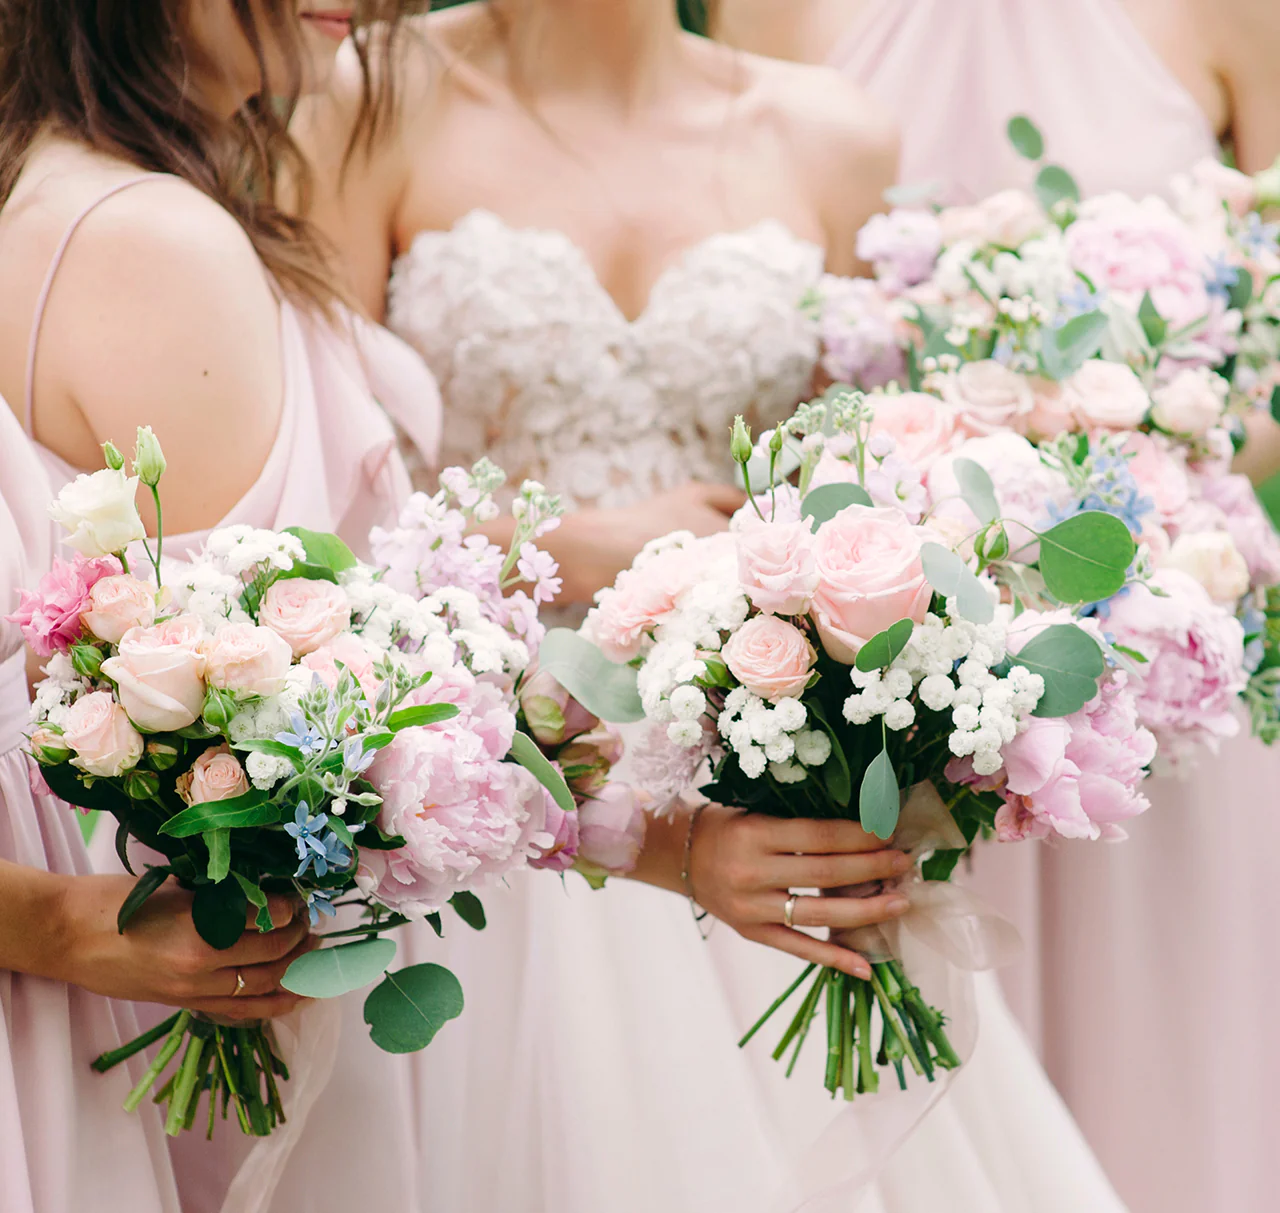 Vrouw & getuige: de beste kledingtips voor de bruiloft | Trouwen.nl